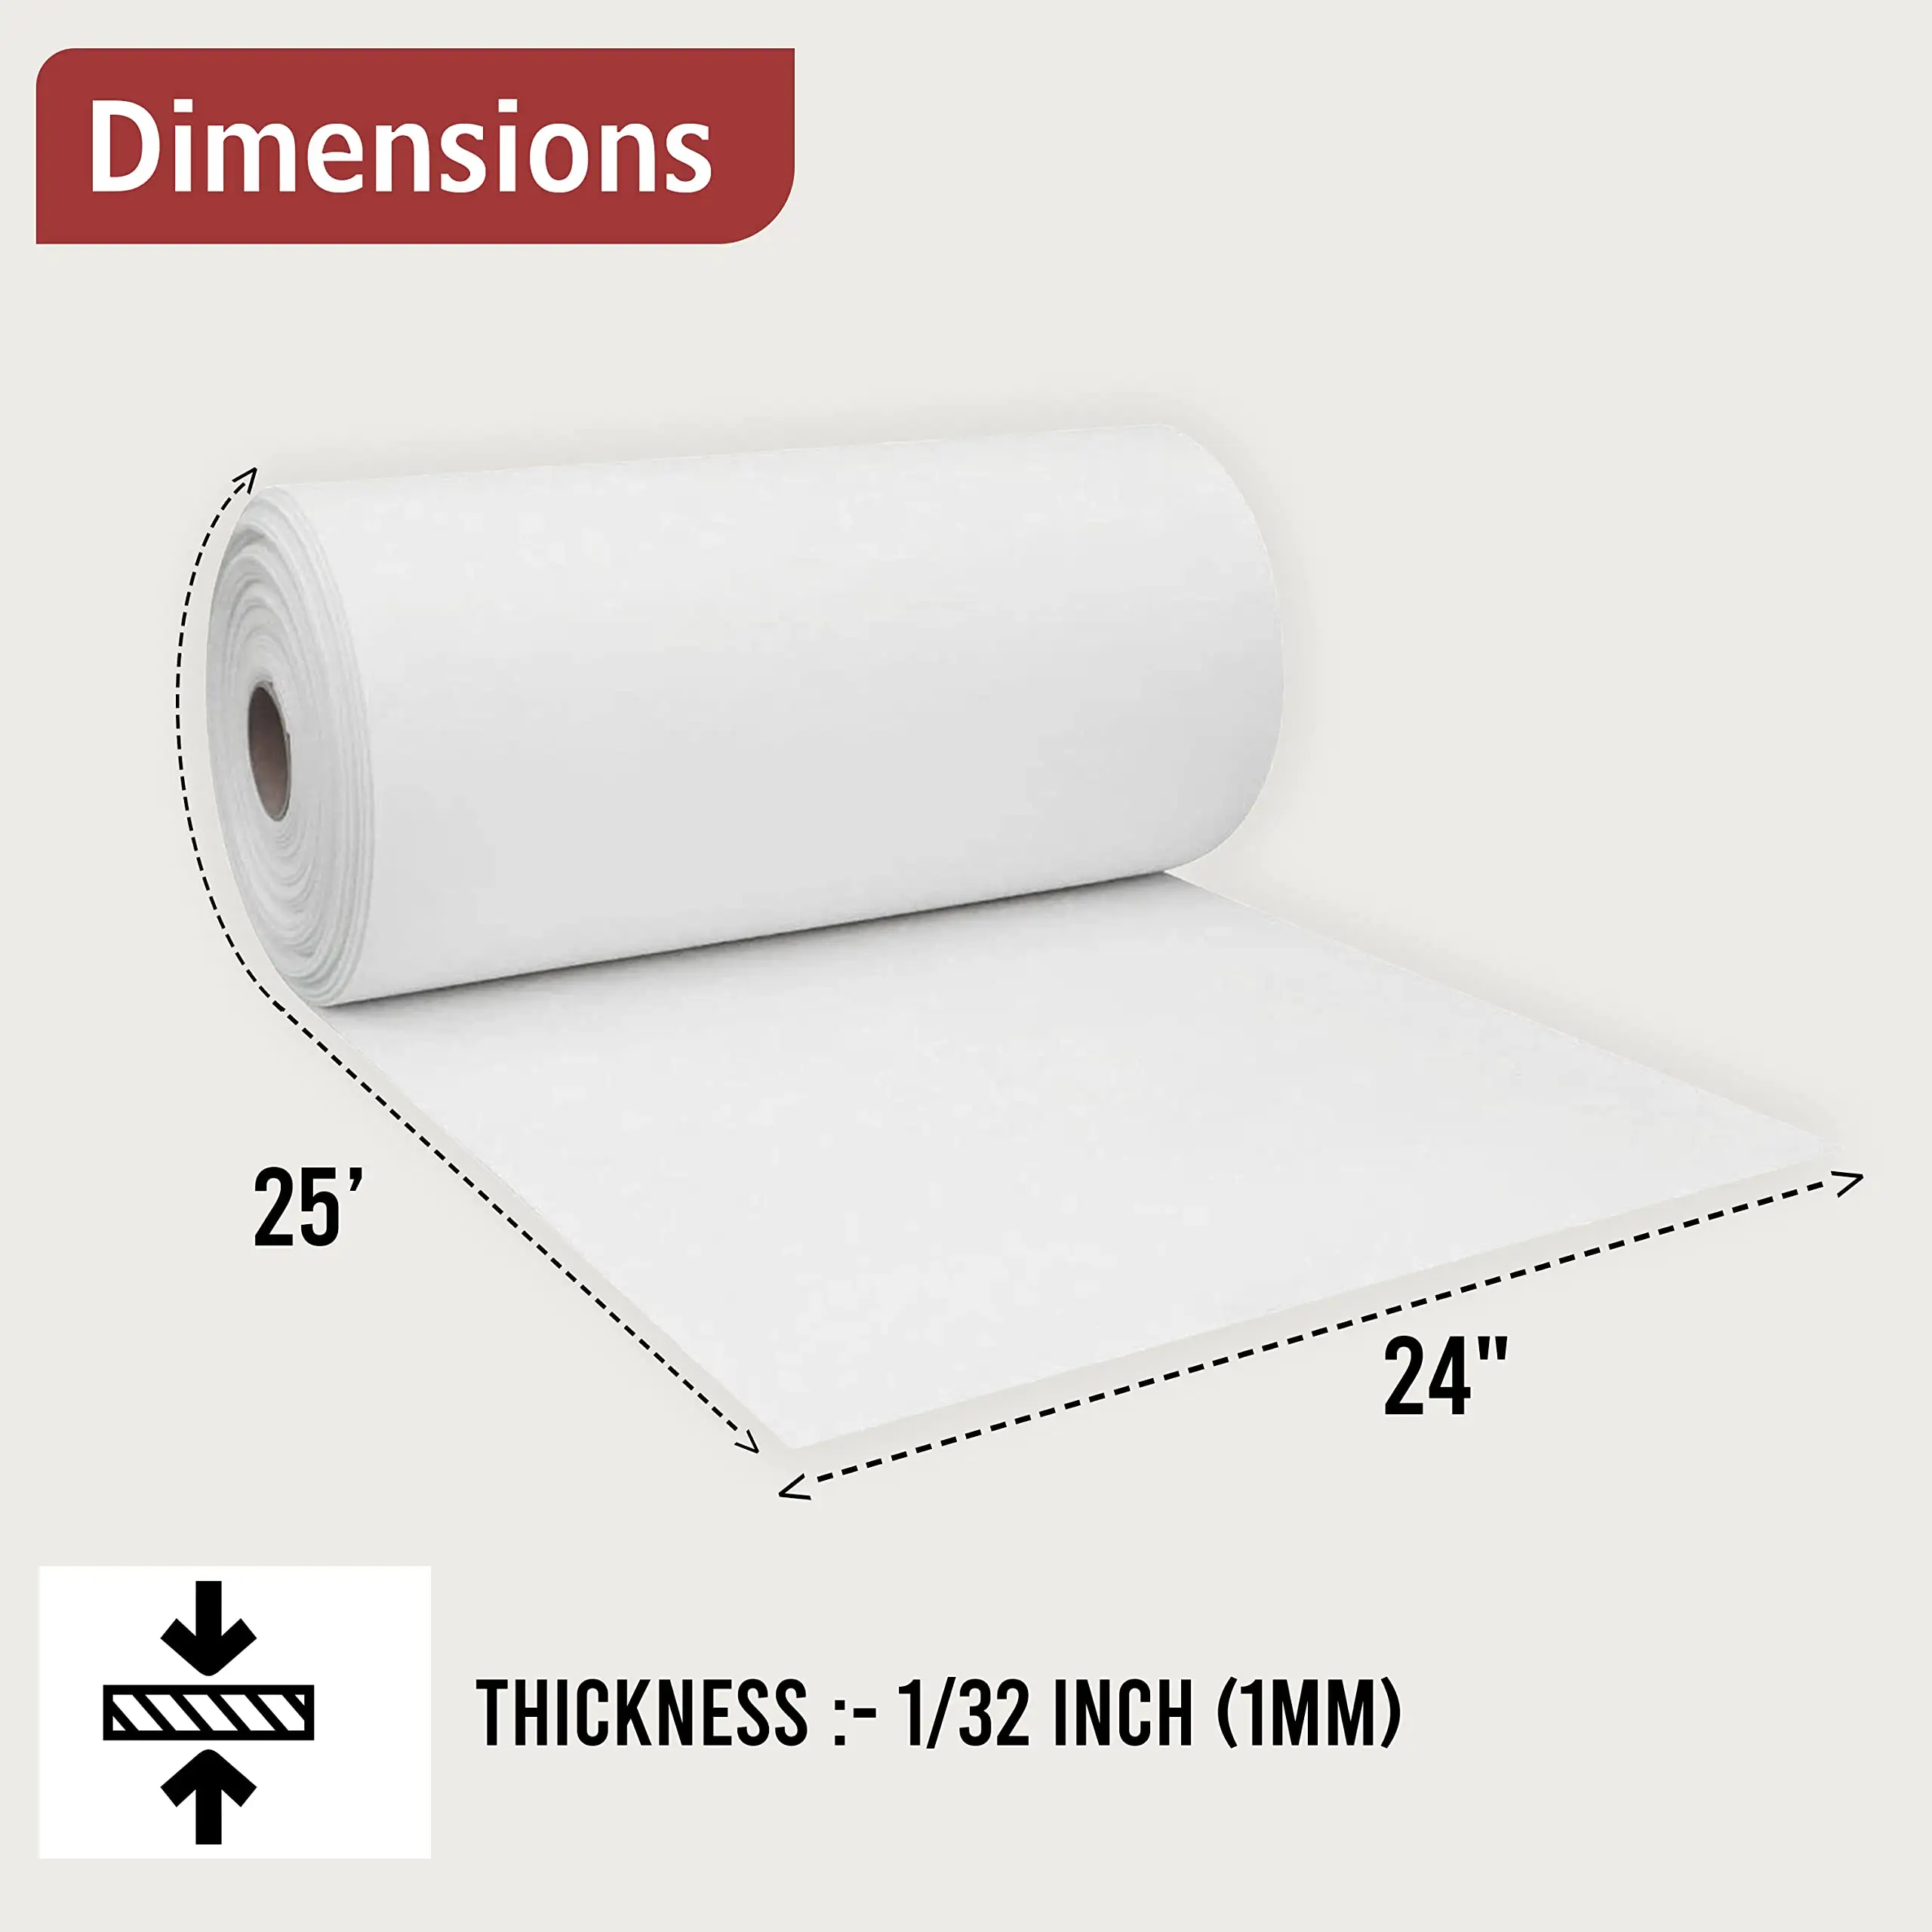 ورق الألياف الصناعية المُنتج من المصنع ورق نسيج Dupont Tyvek مضاد للماء لطباعة الأدوات اليدوية والتغليف